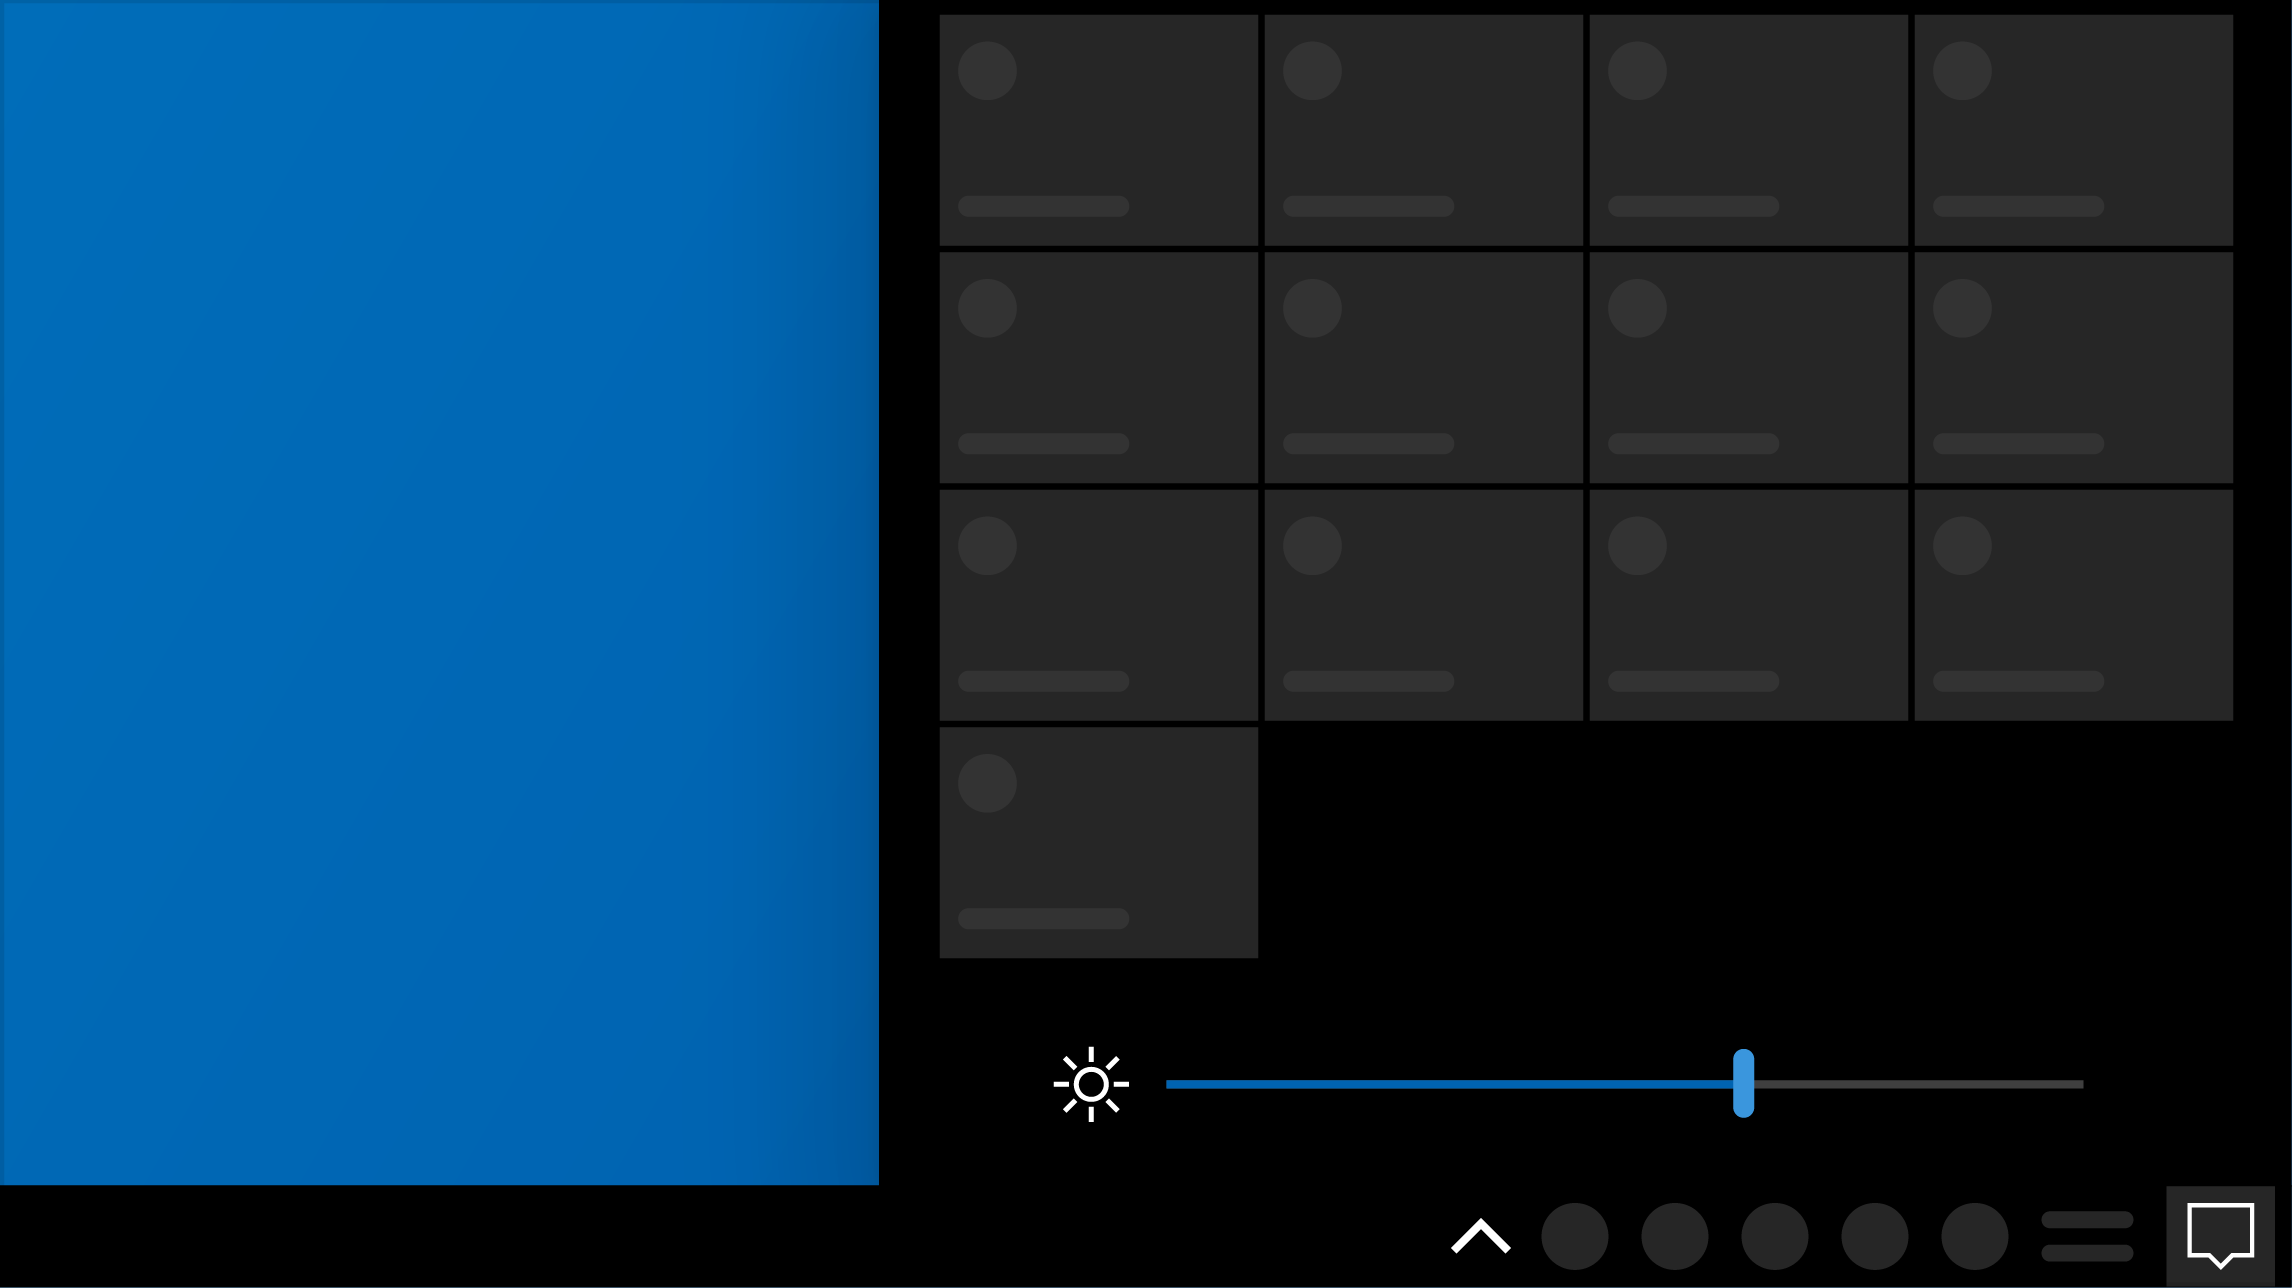 降低屏幕亮度 - 省电模式 - Windows10 进阶版操作手册